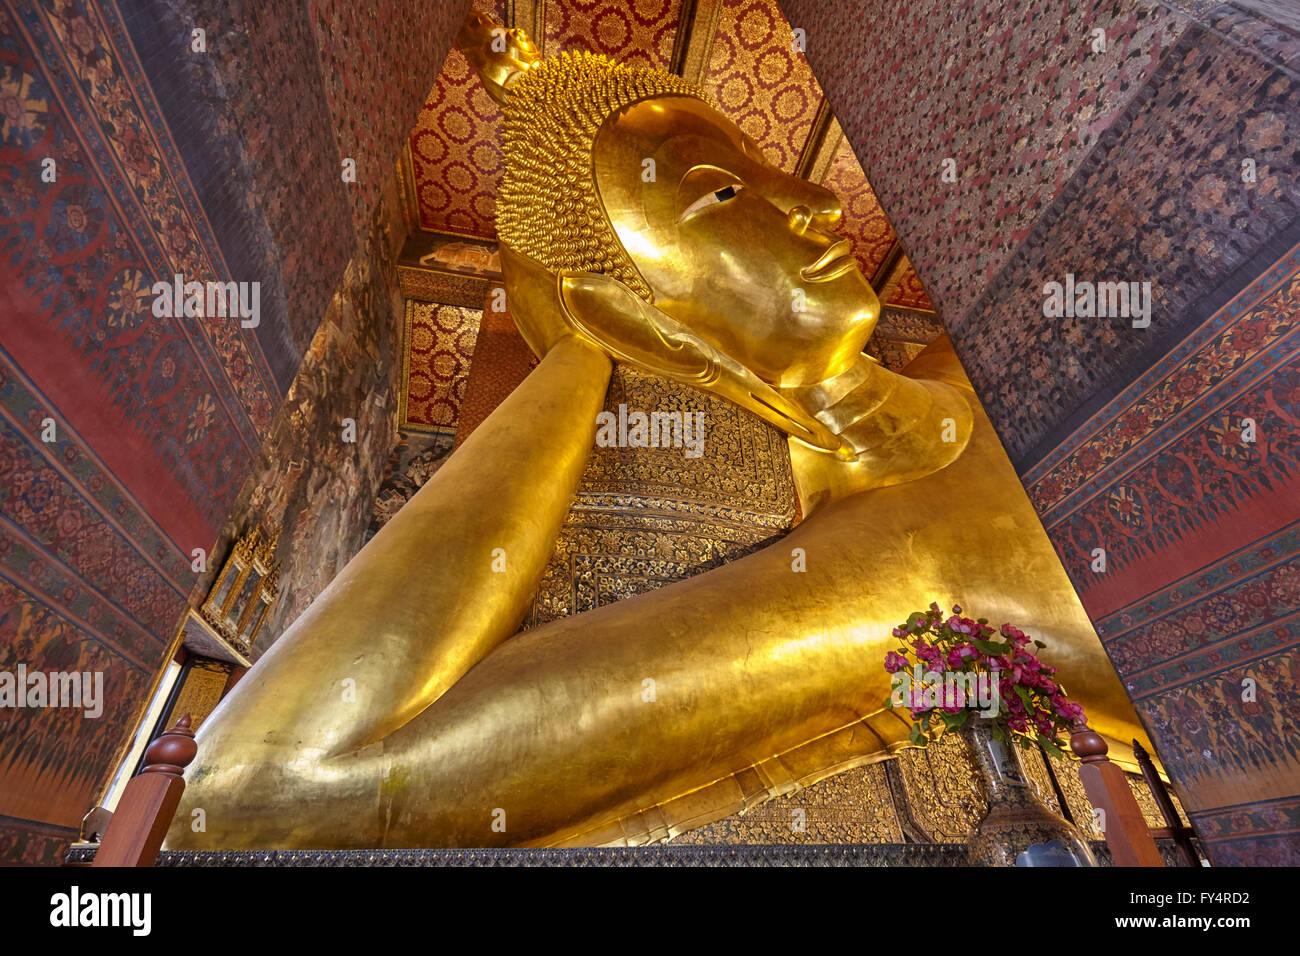 El Buda Reclinado de Wat Pho, Bangkok, Tailandia Foto de stock